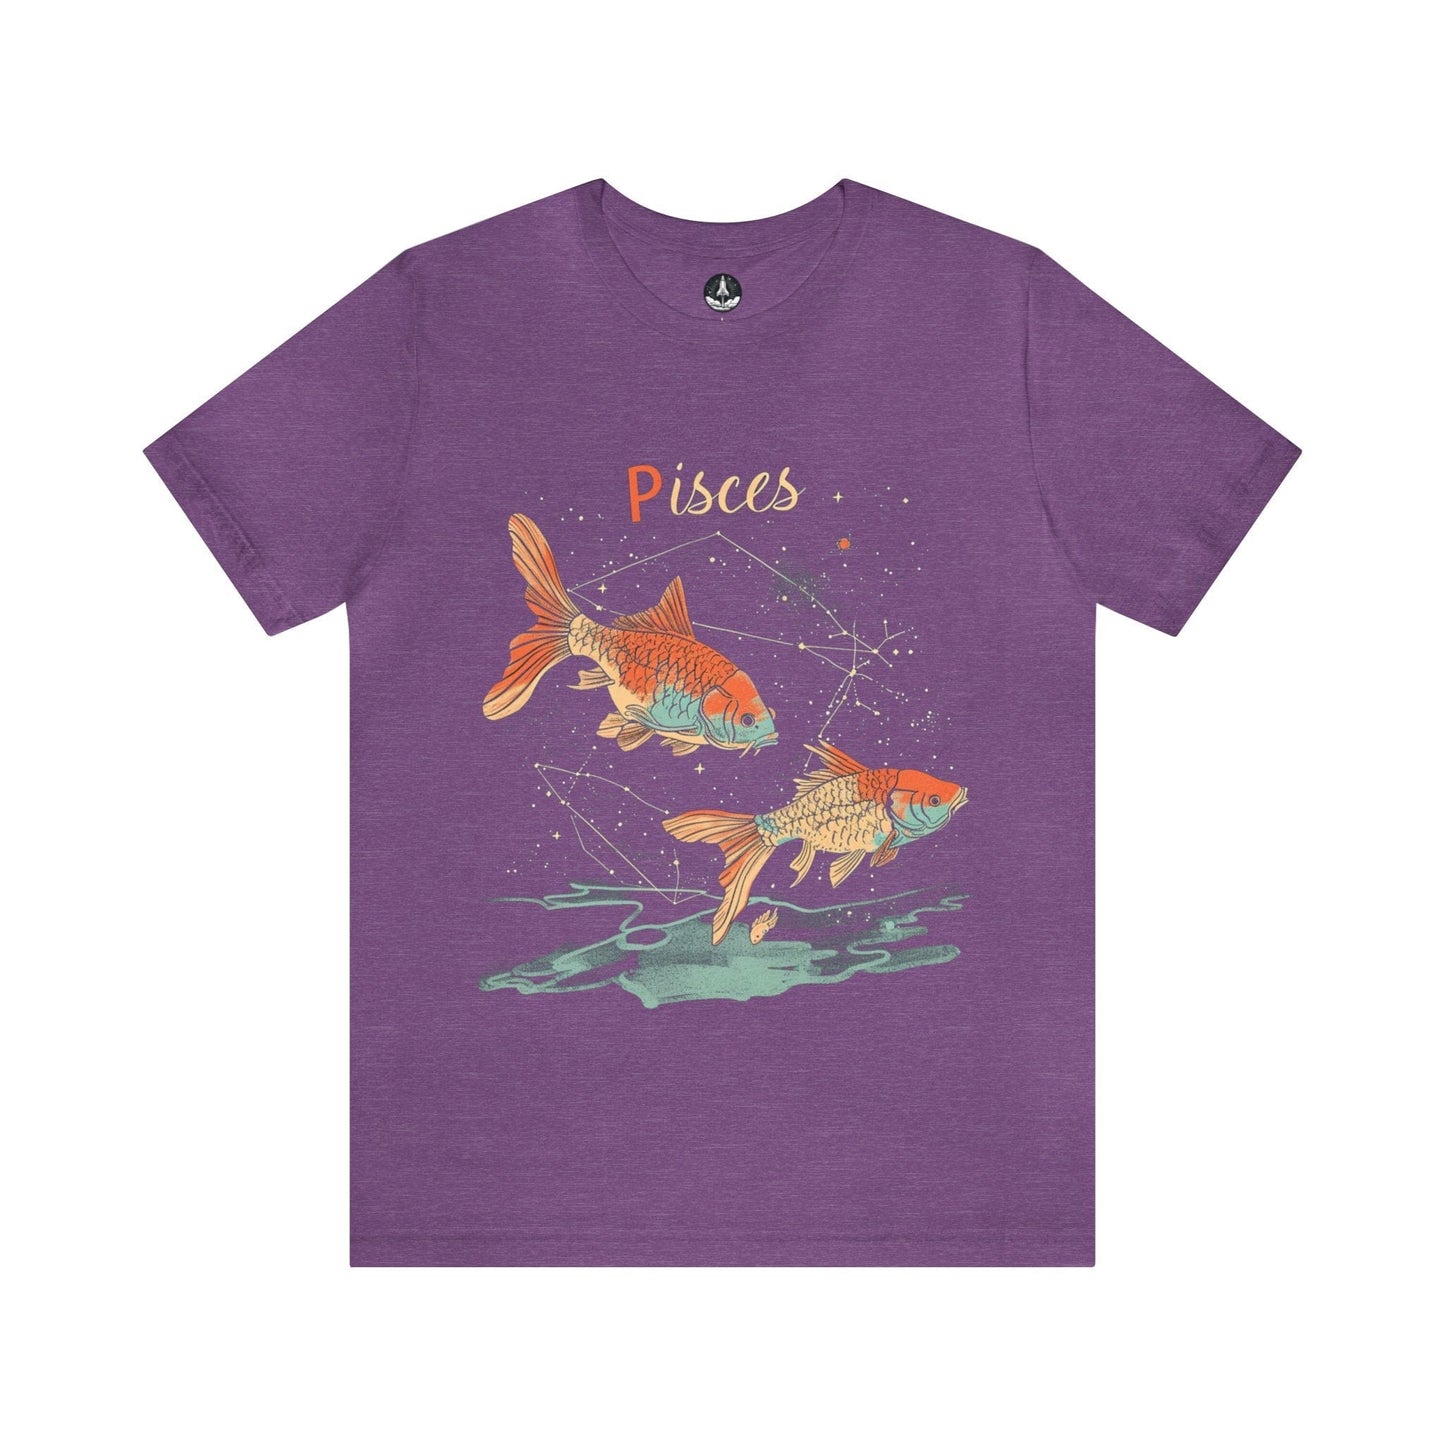 T-Shirt Heather Team Purple / S Pisces Art T-Shirt: Organic Cotton Zodiac Wear